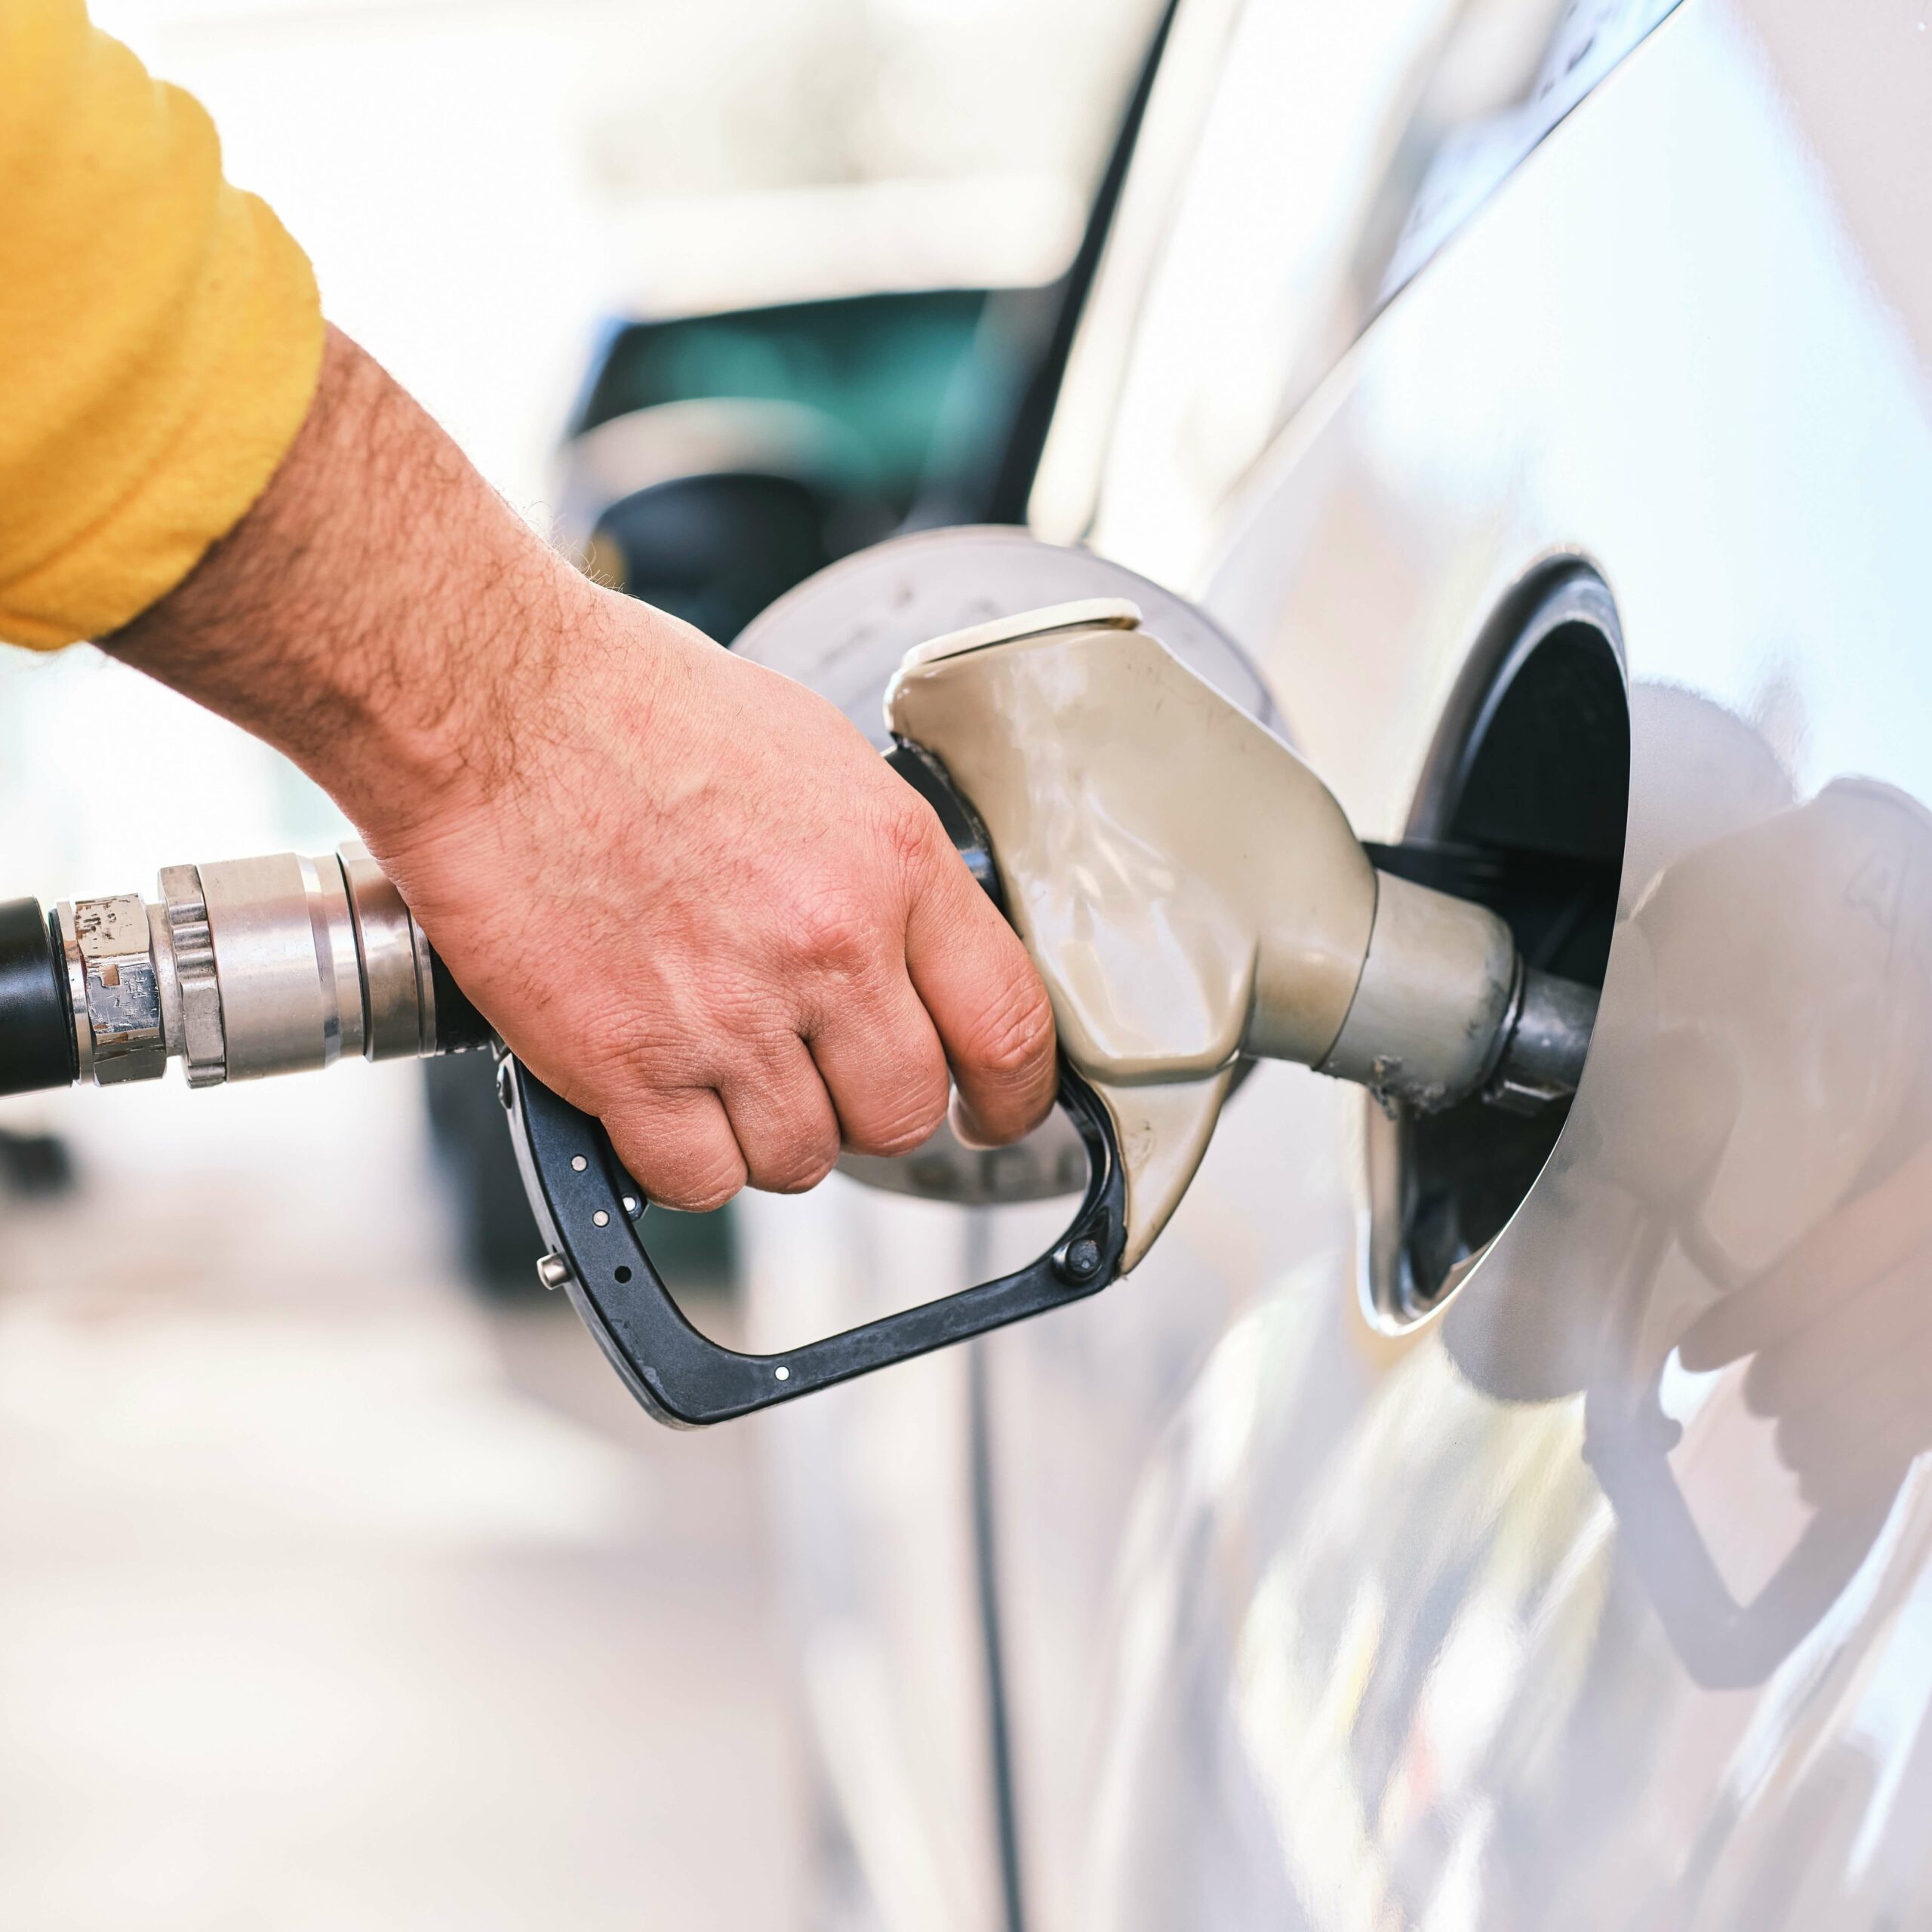 האם דלק זול יותר מחשמל?